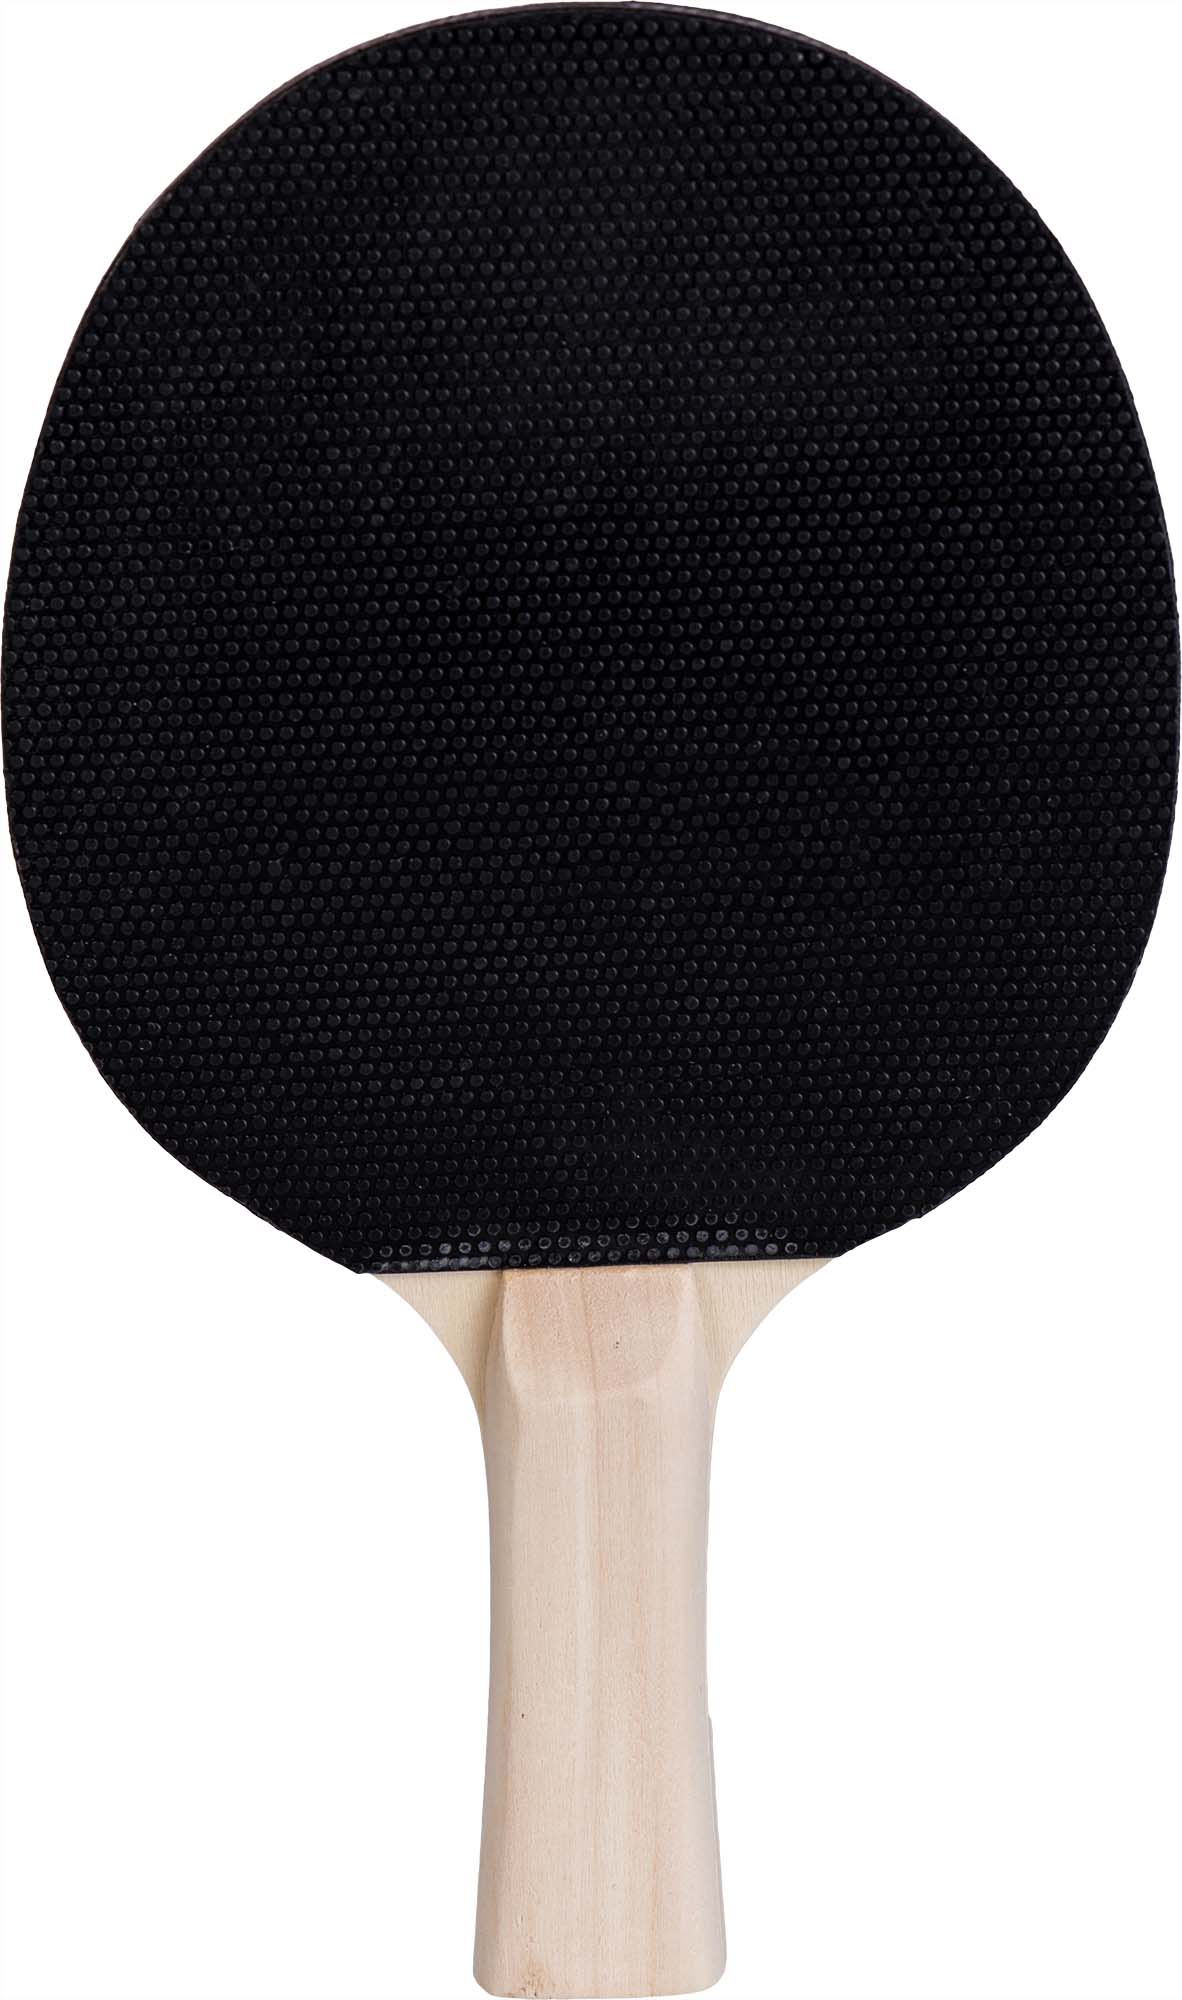 Ping-pong ütő